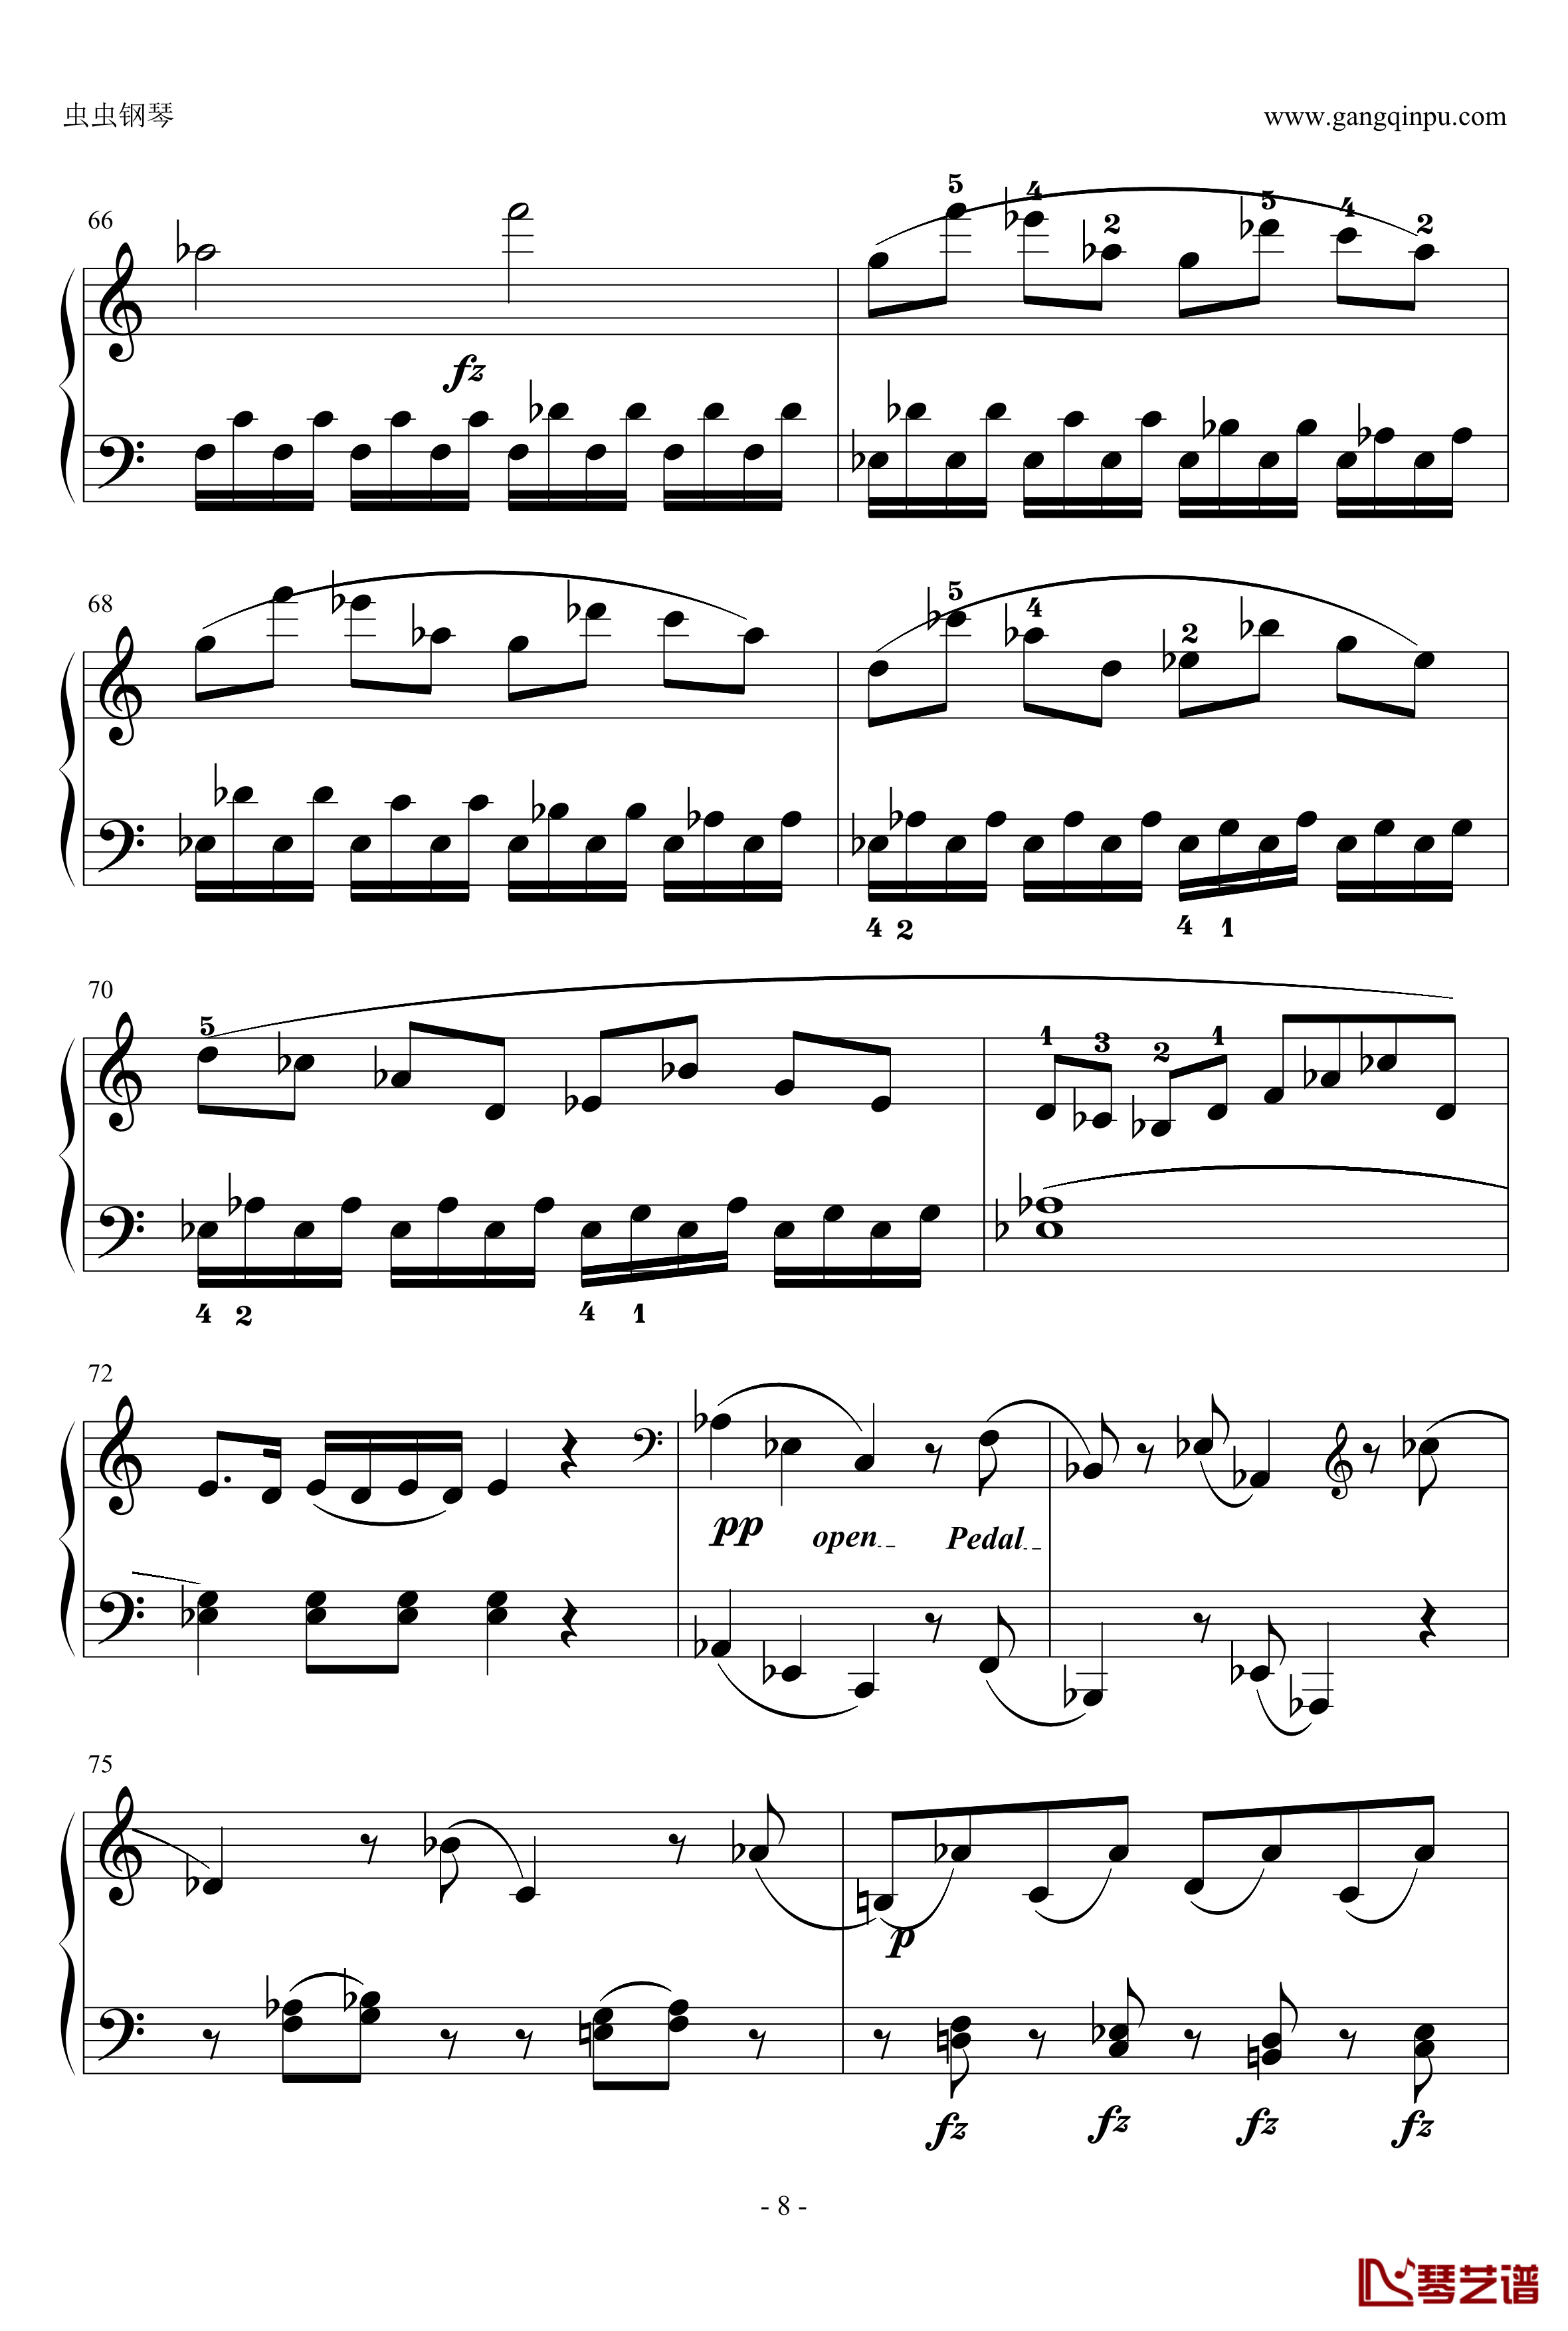 C大调奏鸣曲钢琴谱第一乐章-海顿8